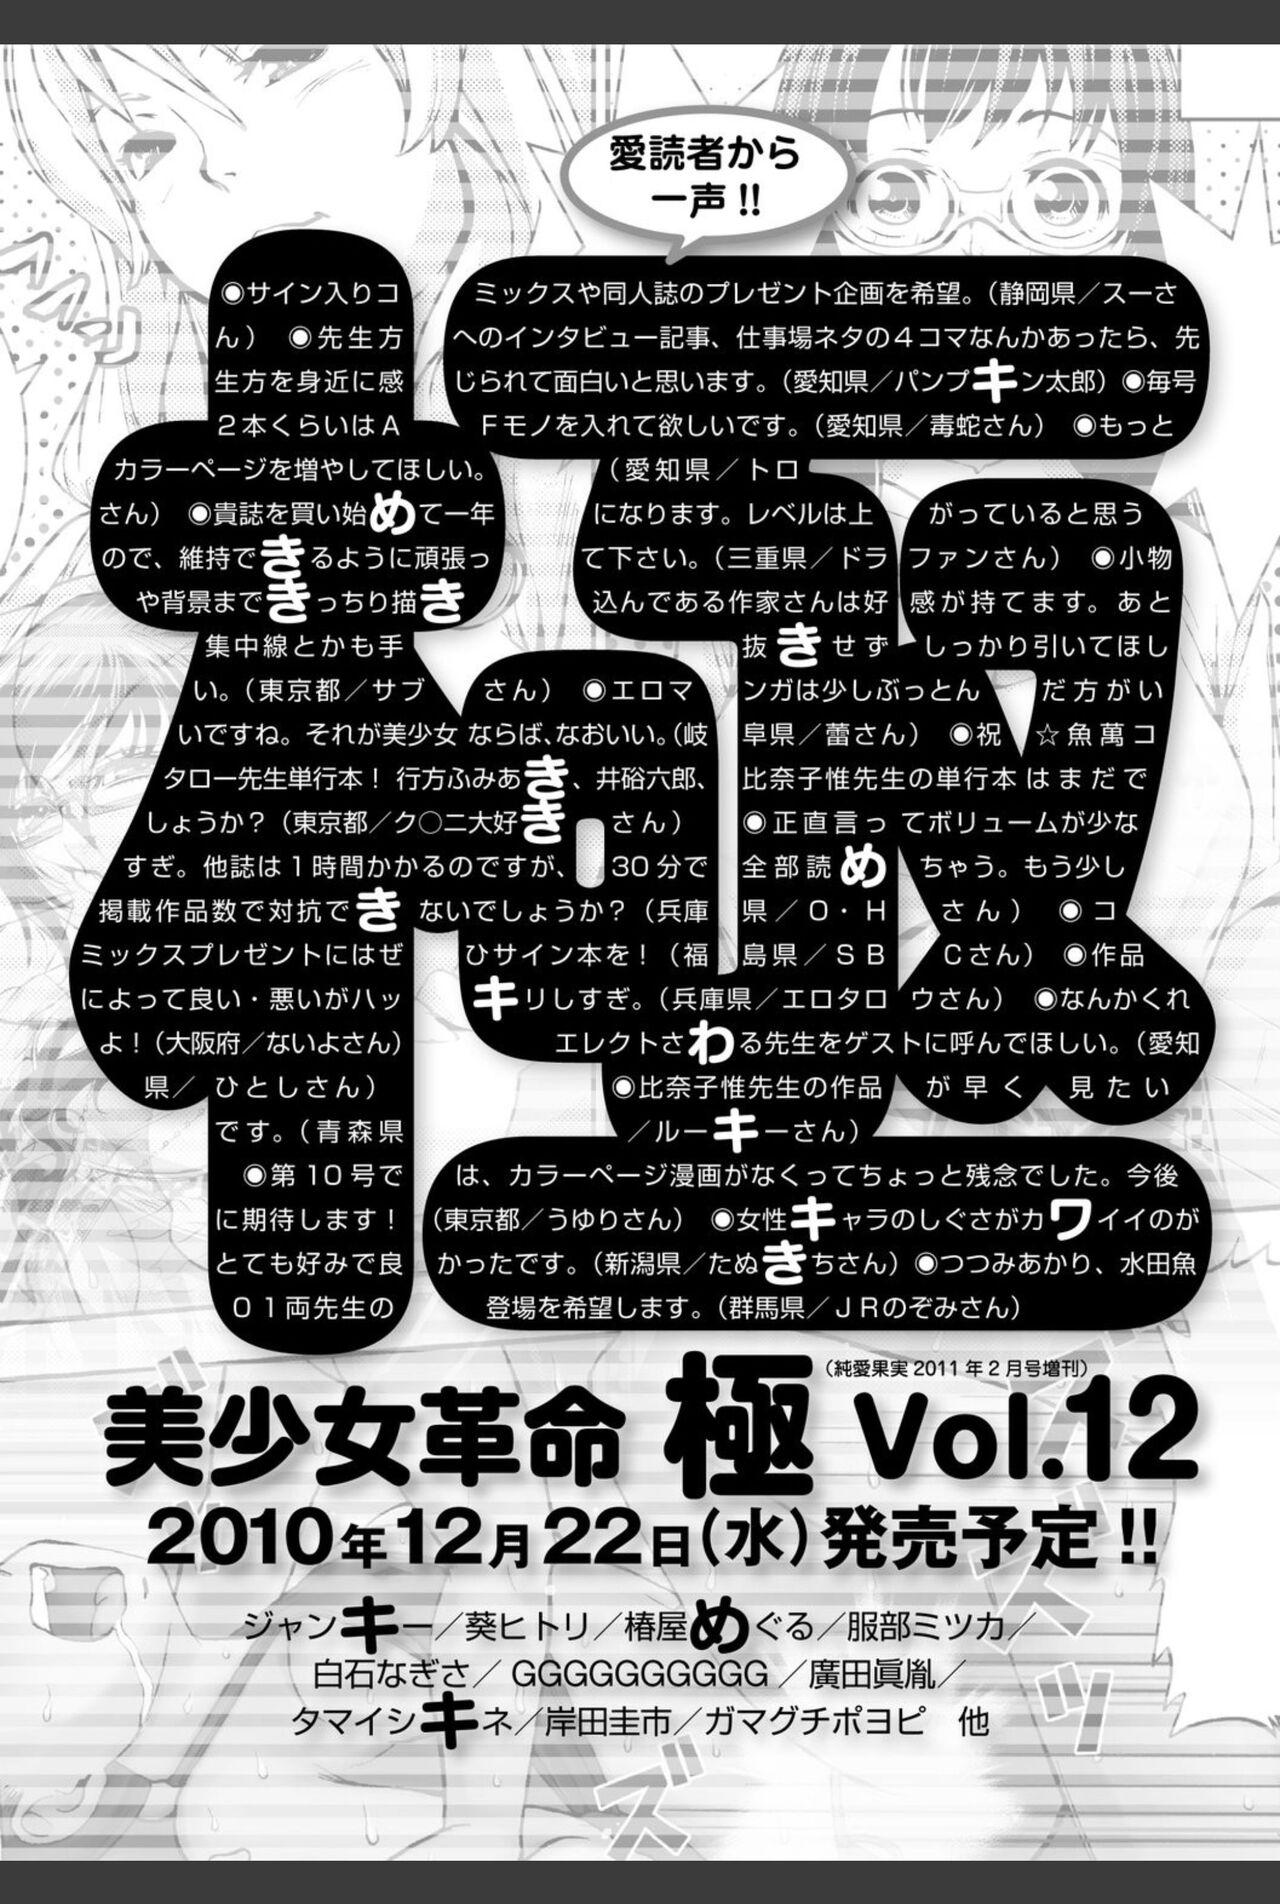 Bishoujo Kakumei KIWAME 2010-12 Vol.11 209